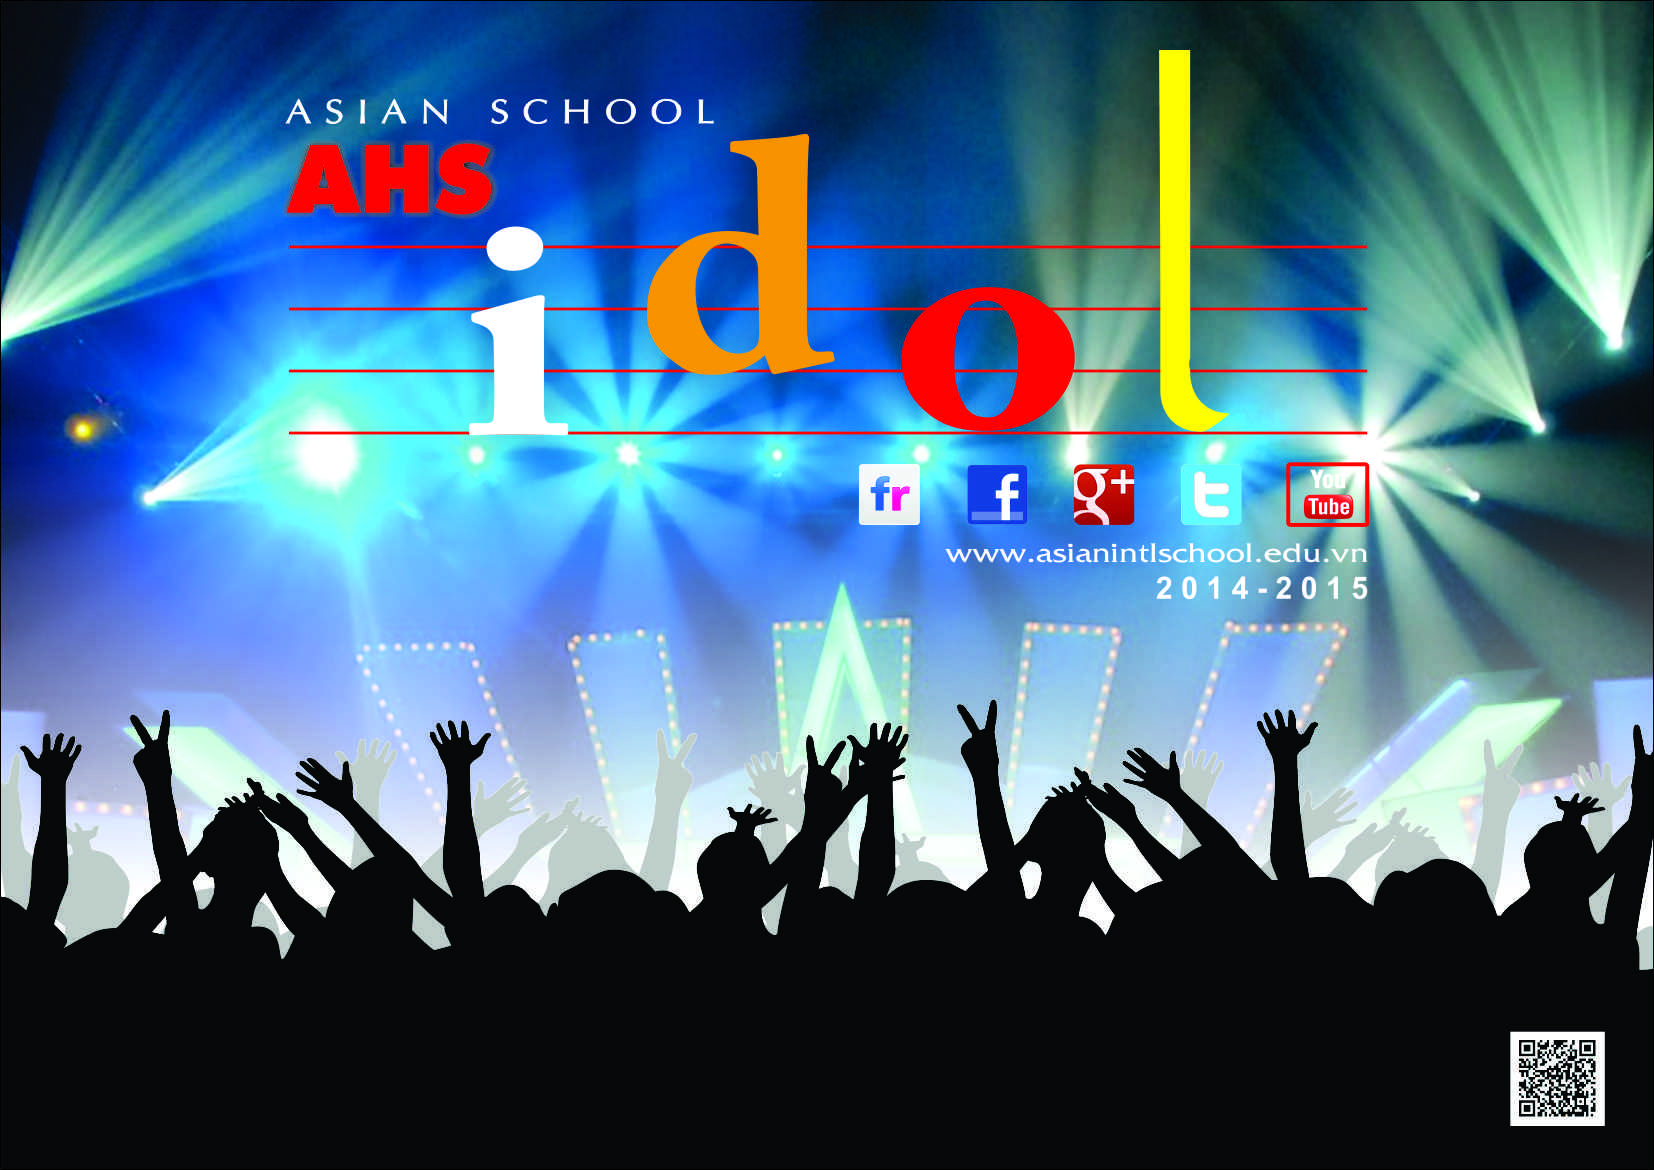 English singing Contest "AHS IDOL 2020"